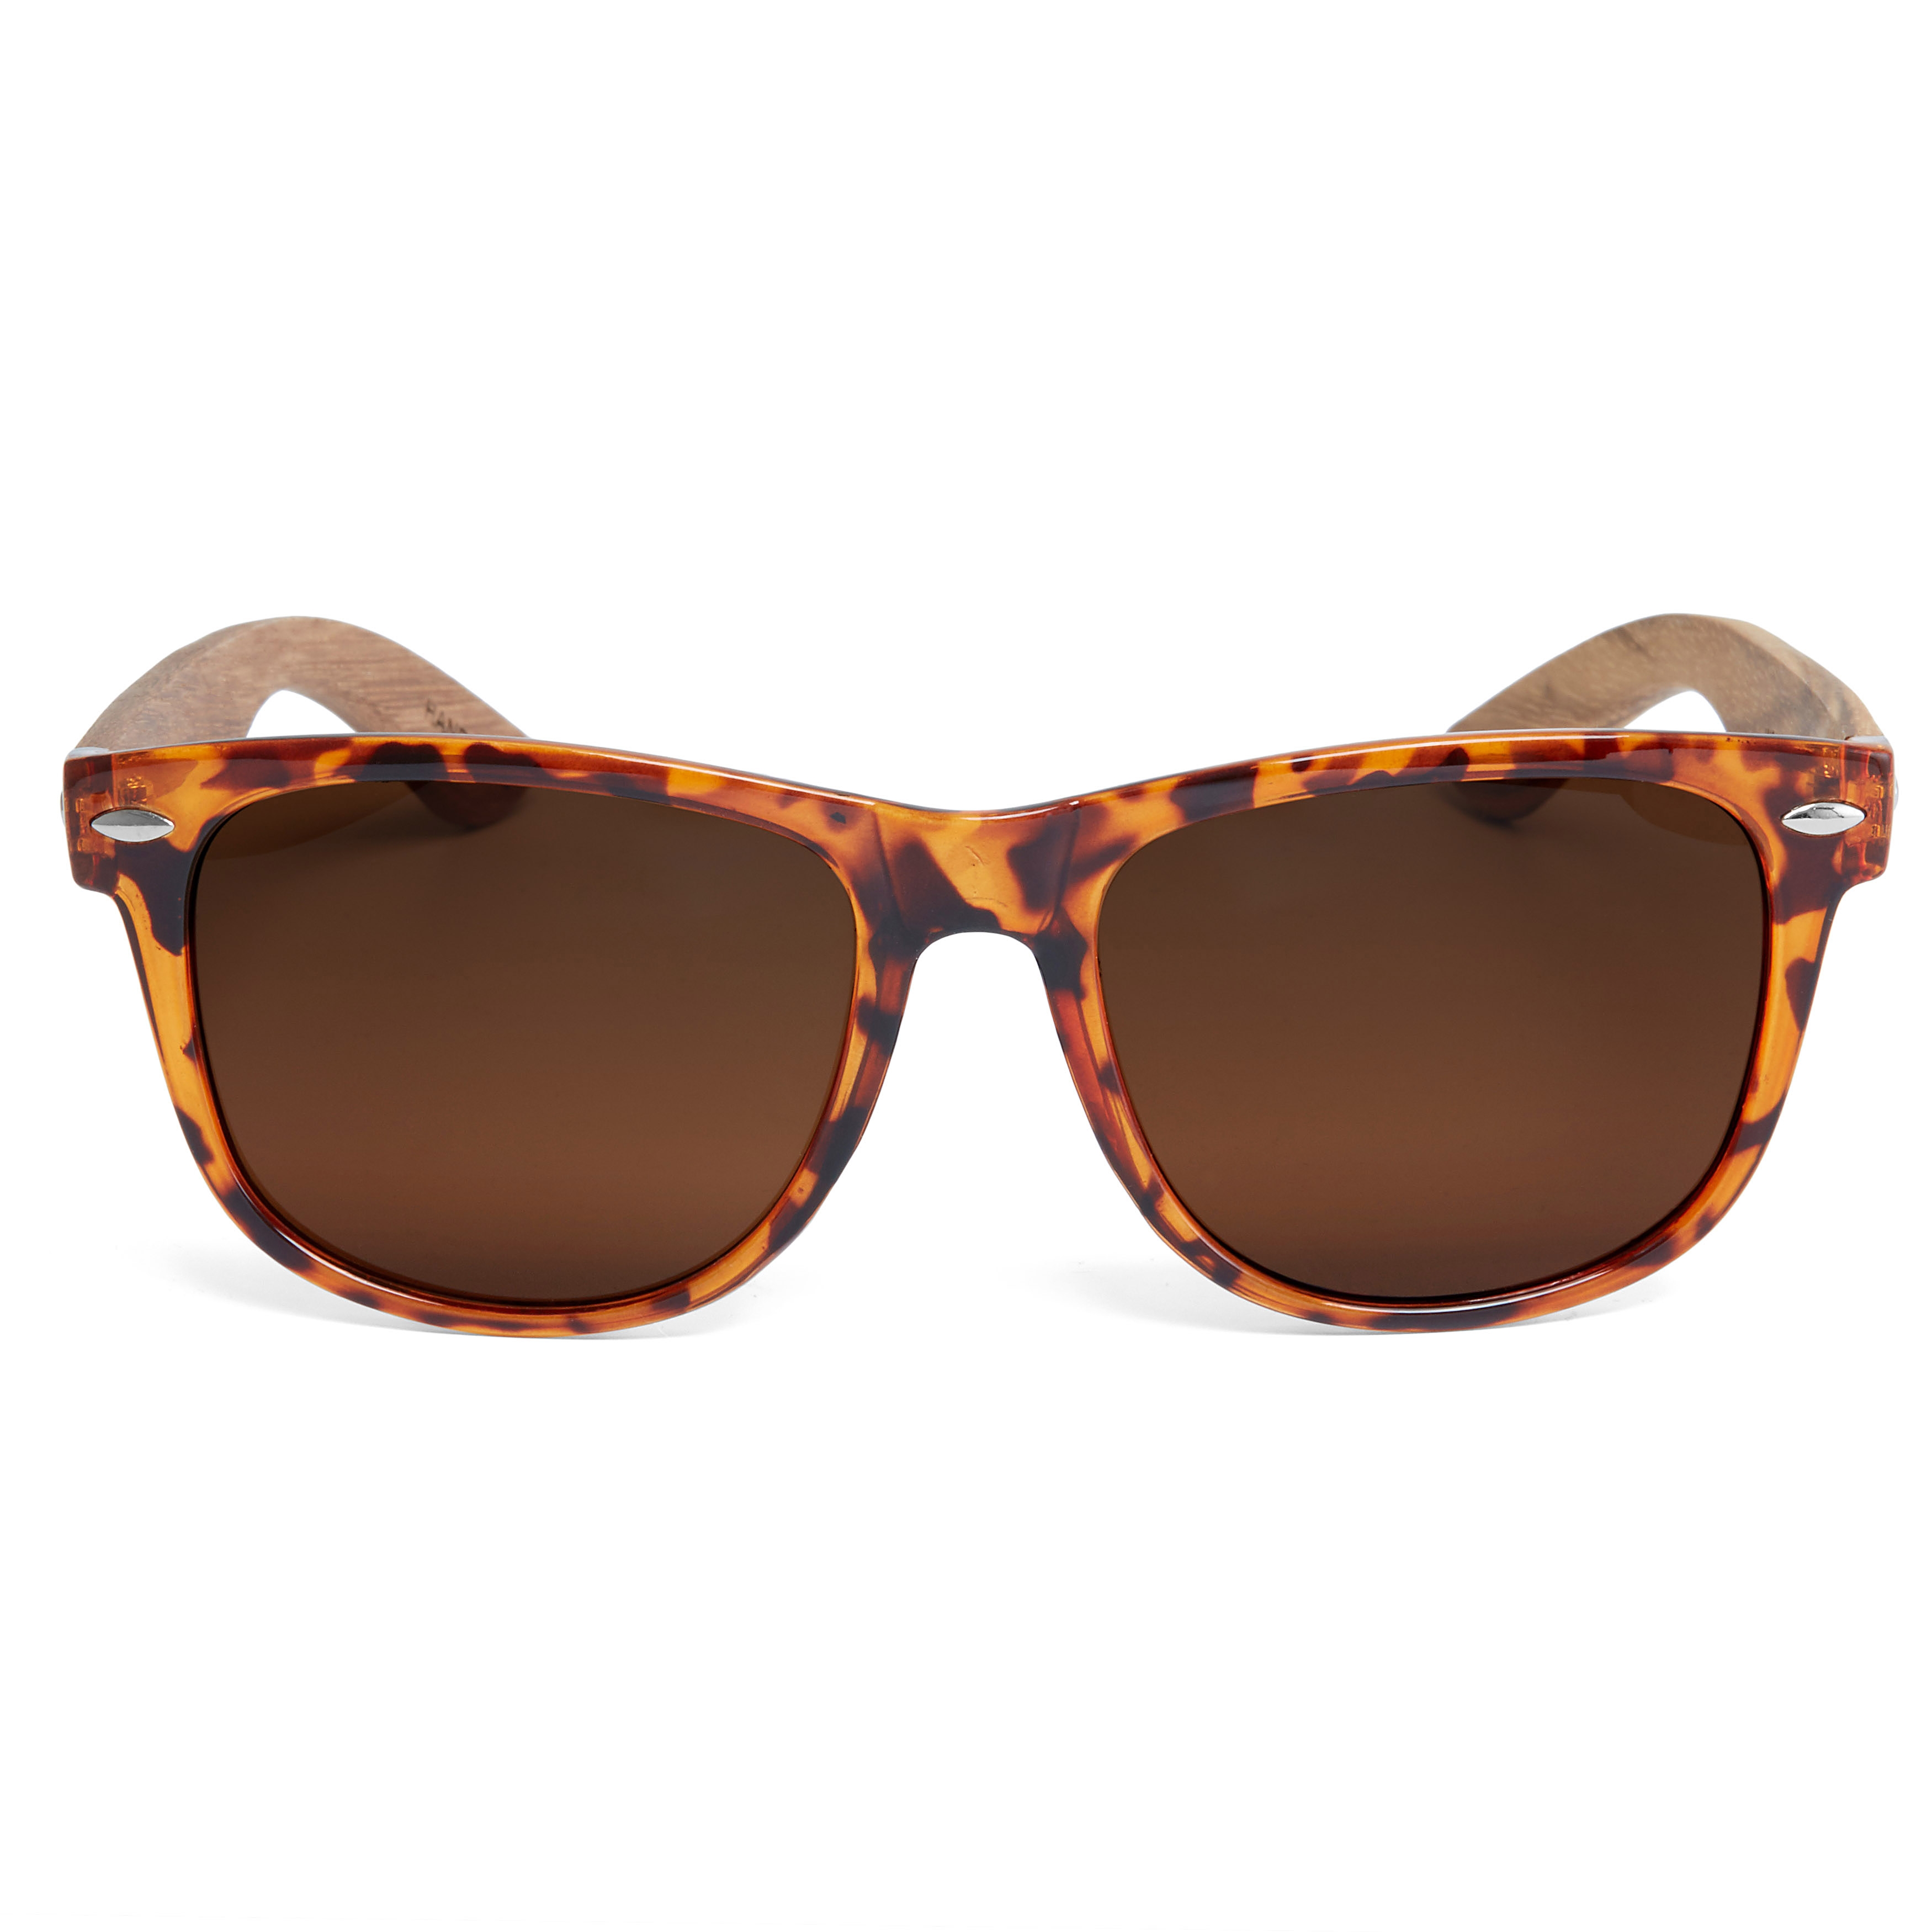 Tortoise Shell & Brown Wooden Sunglasses - for Men - Paul Riley